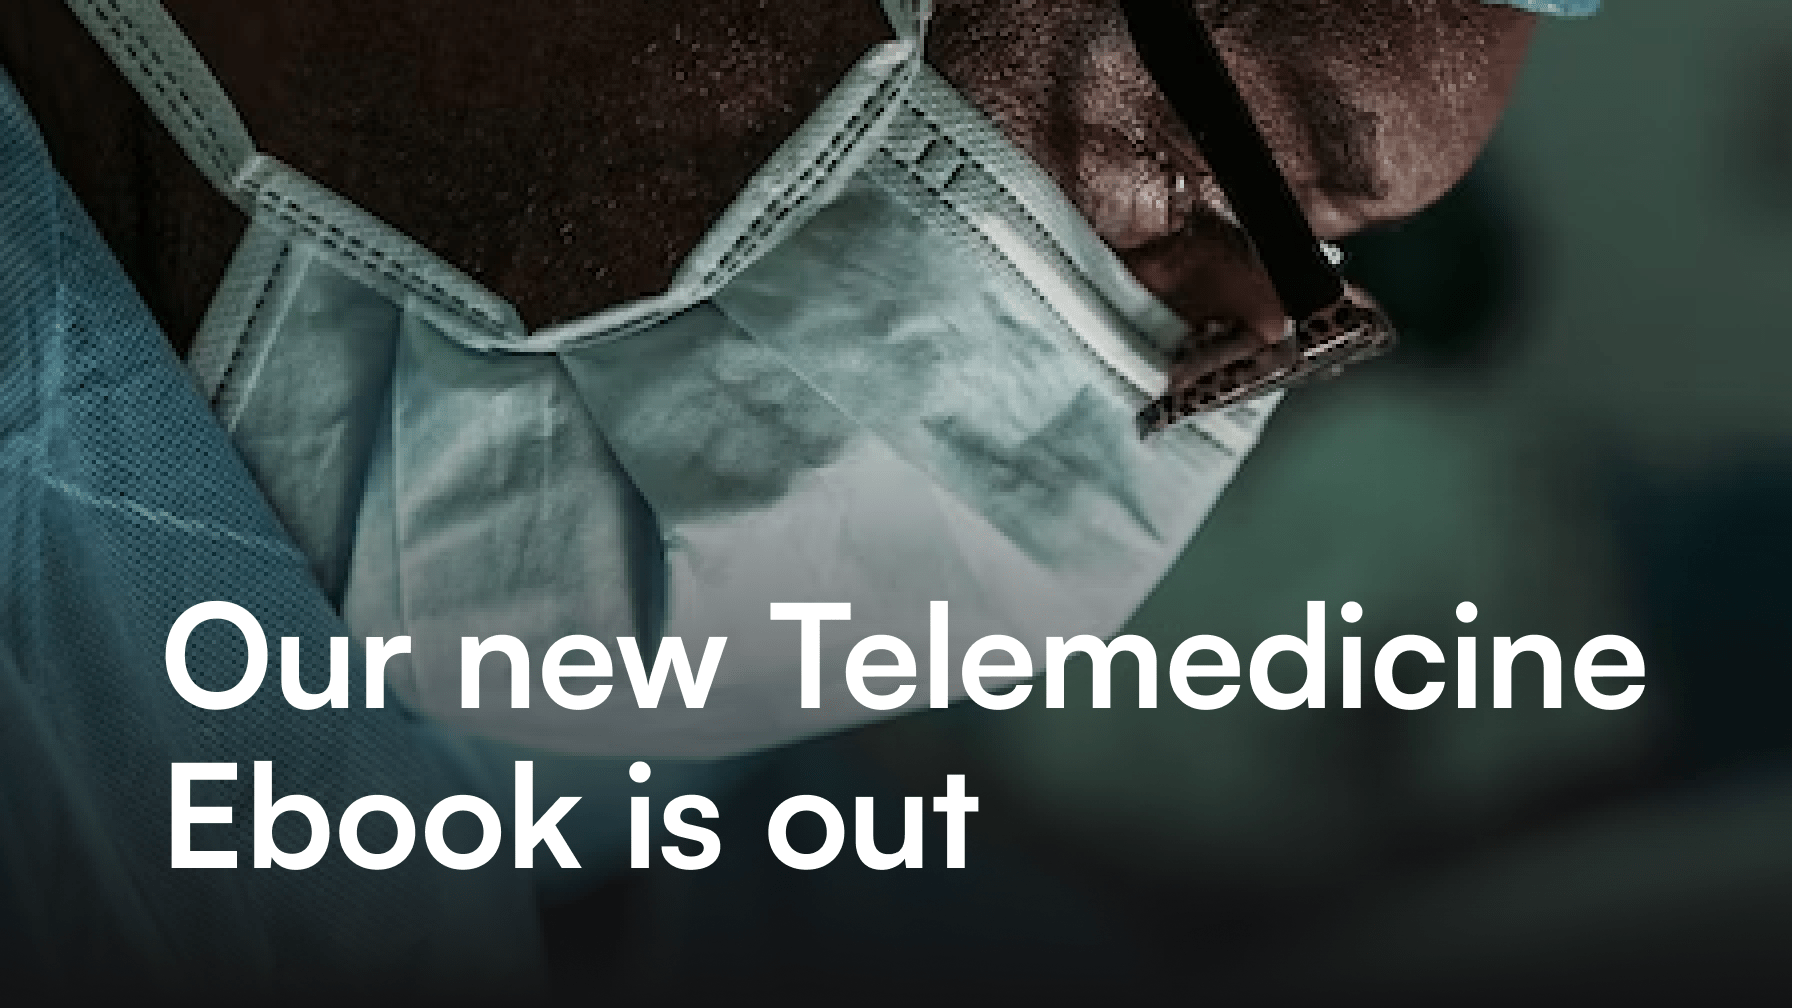 Telemedicine ebook